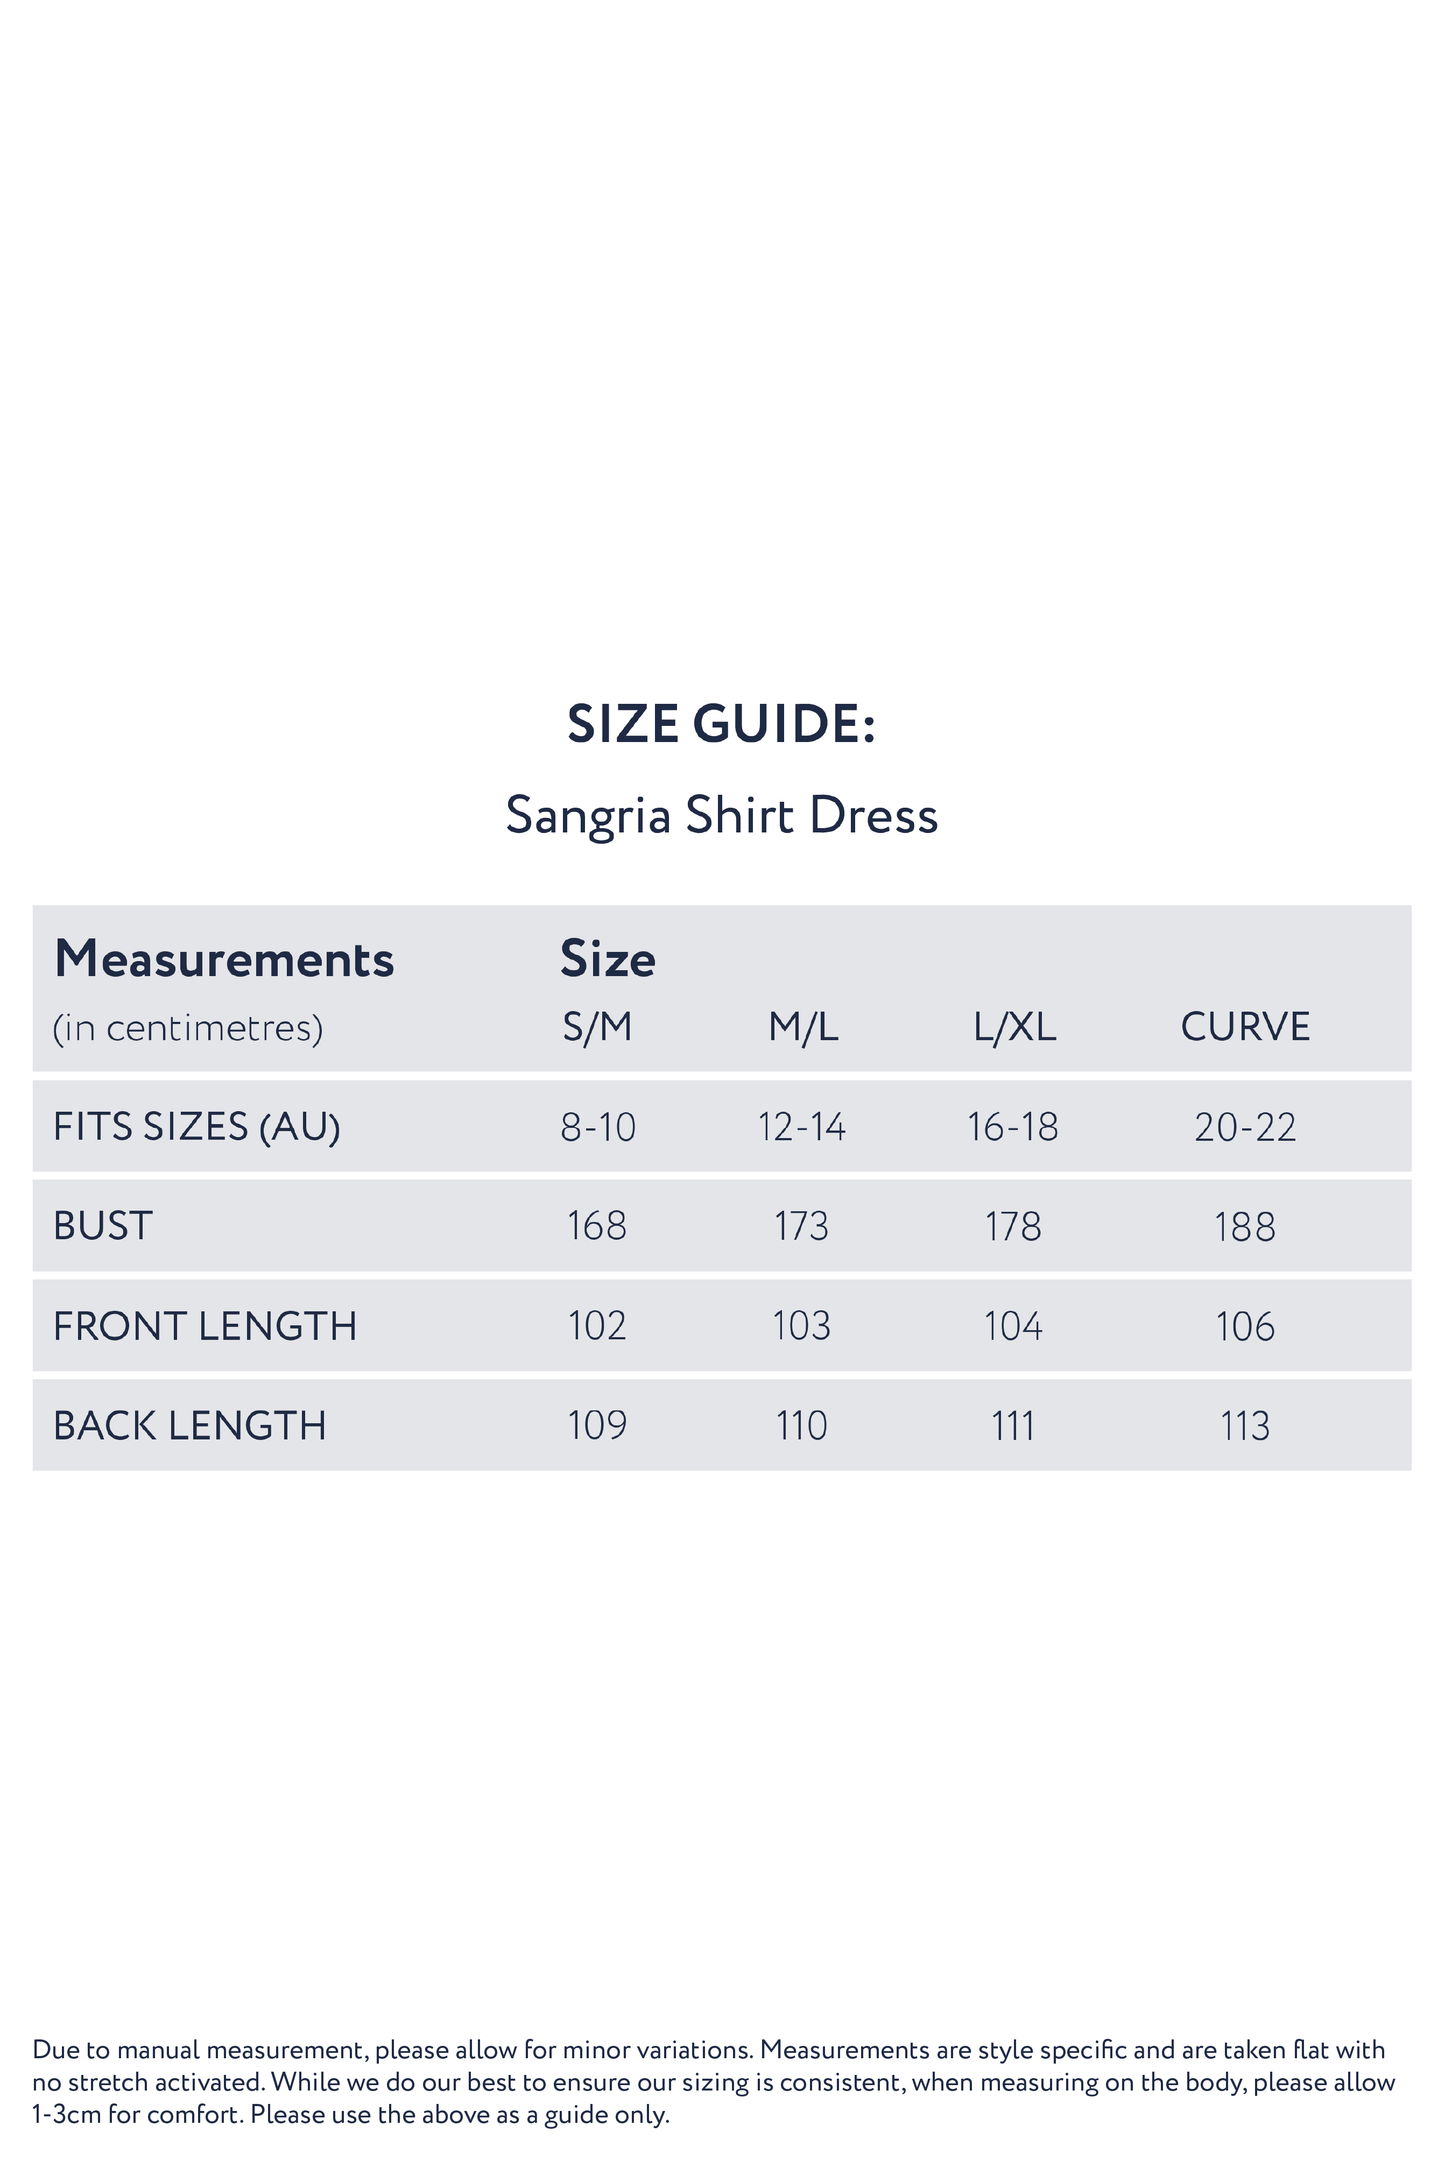 Sangria Shirt Dress in Raisin